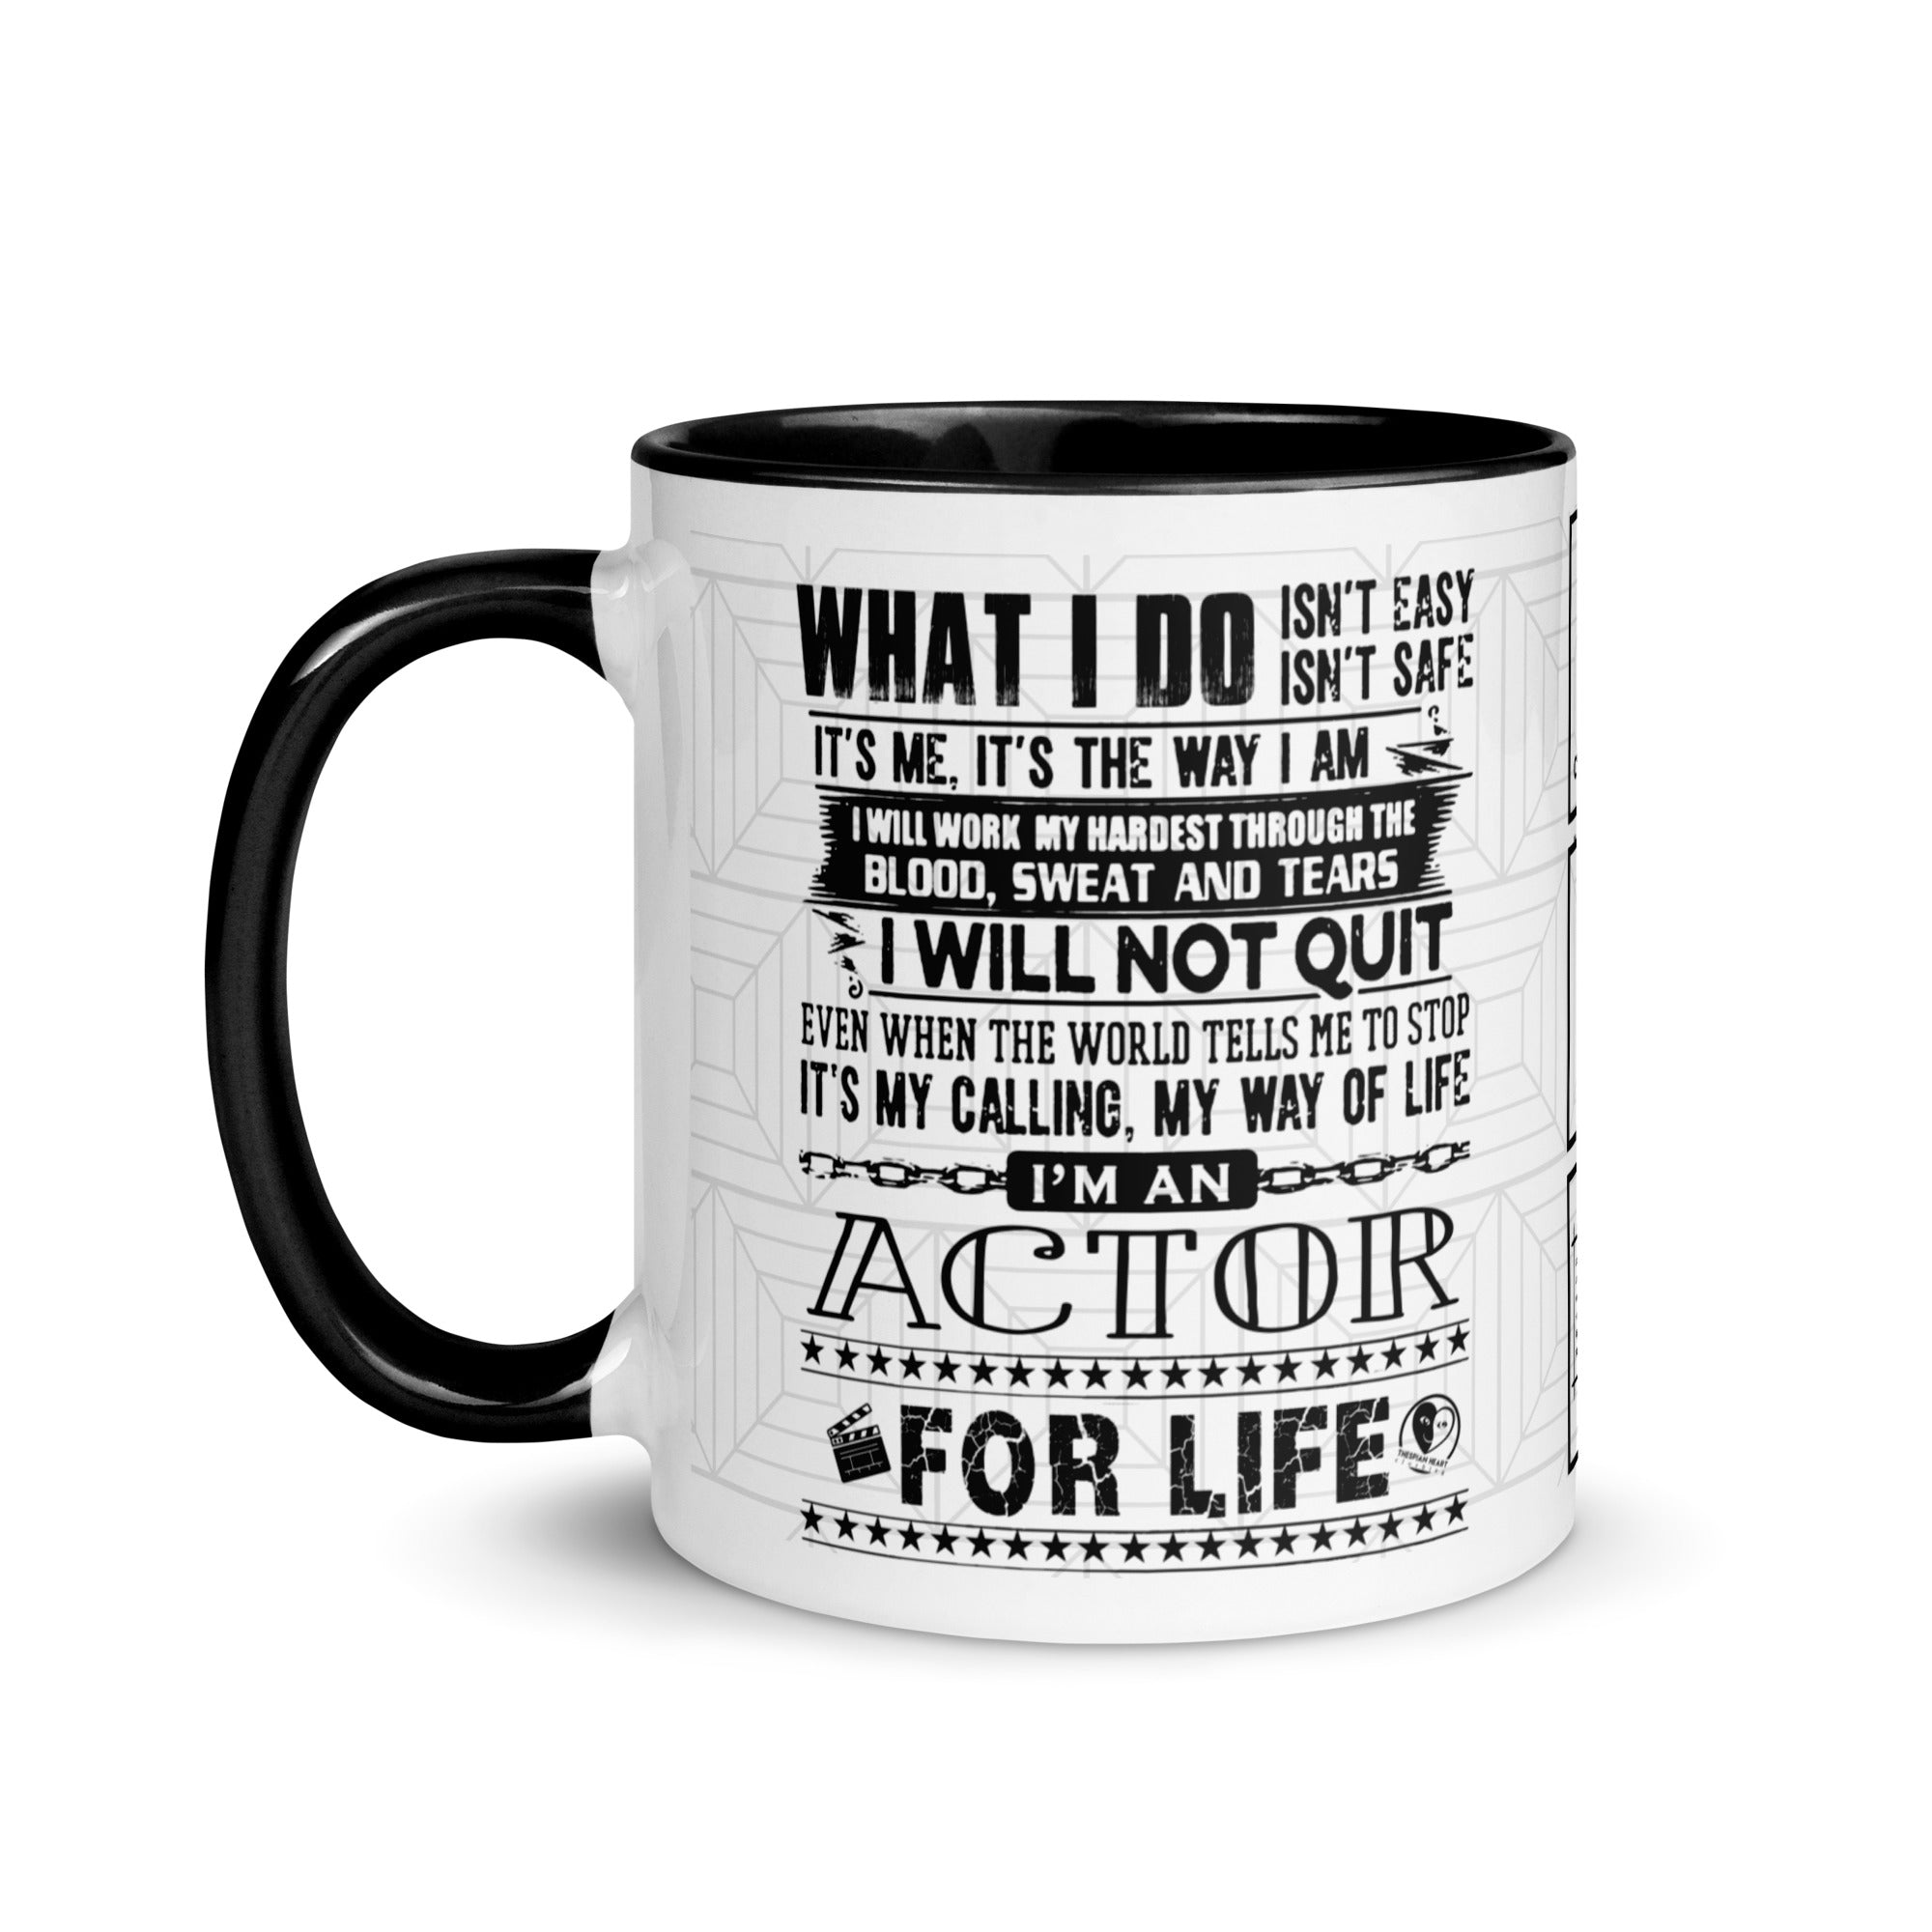 Actor for Life - 11oz Coffee & Tea Mug